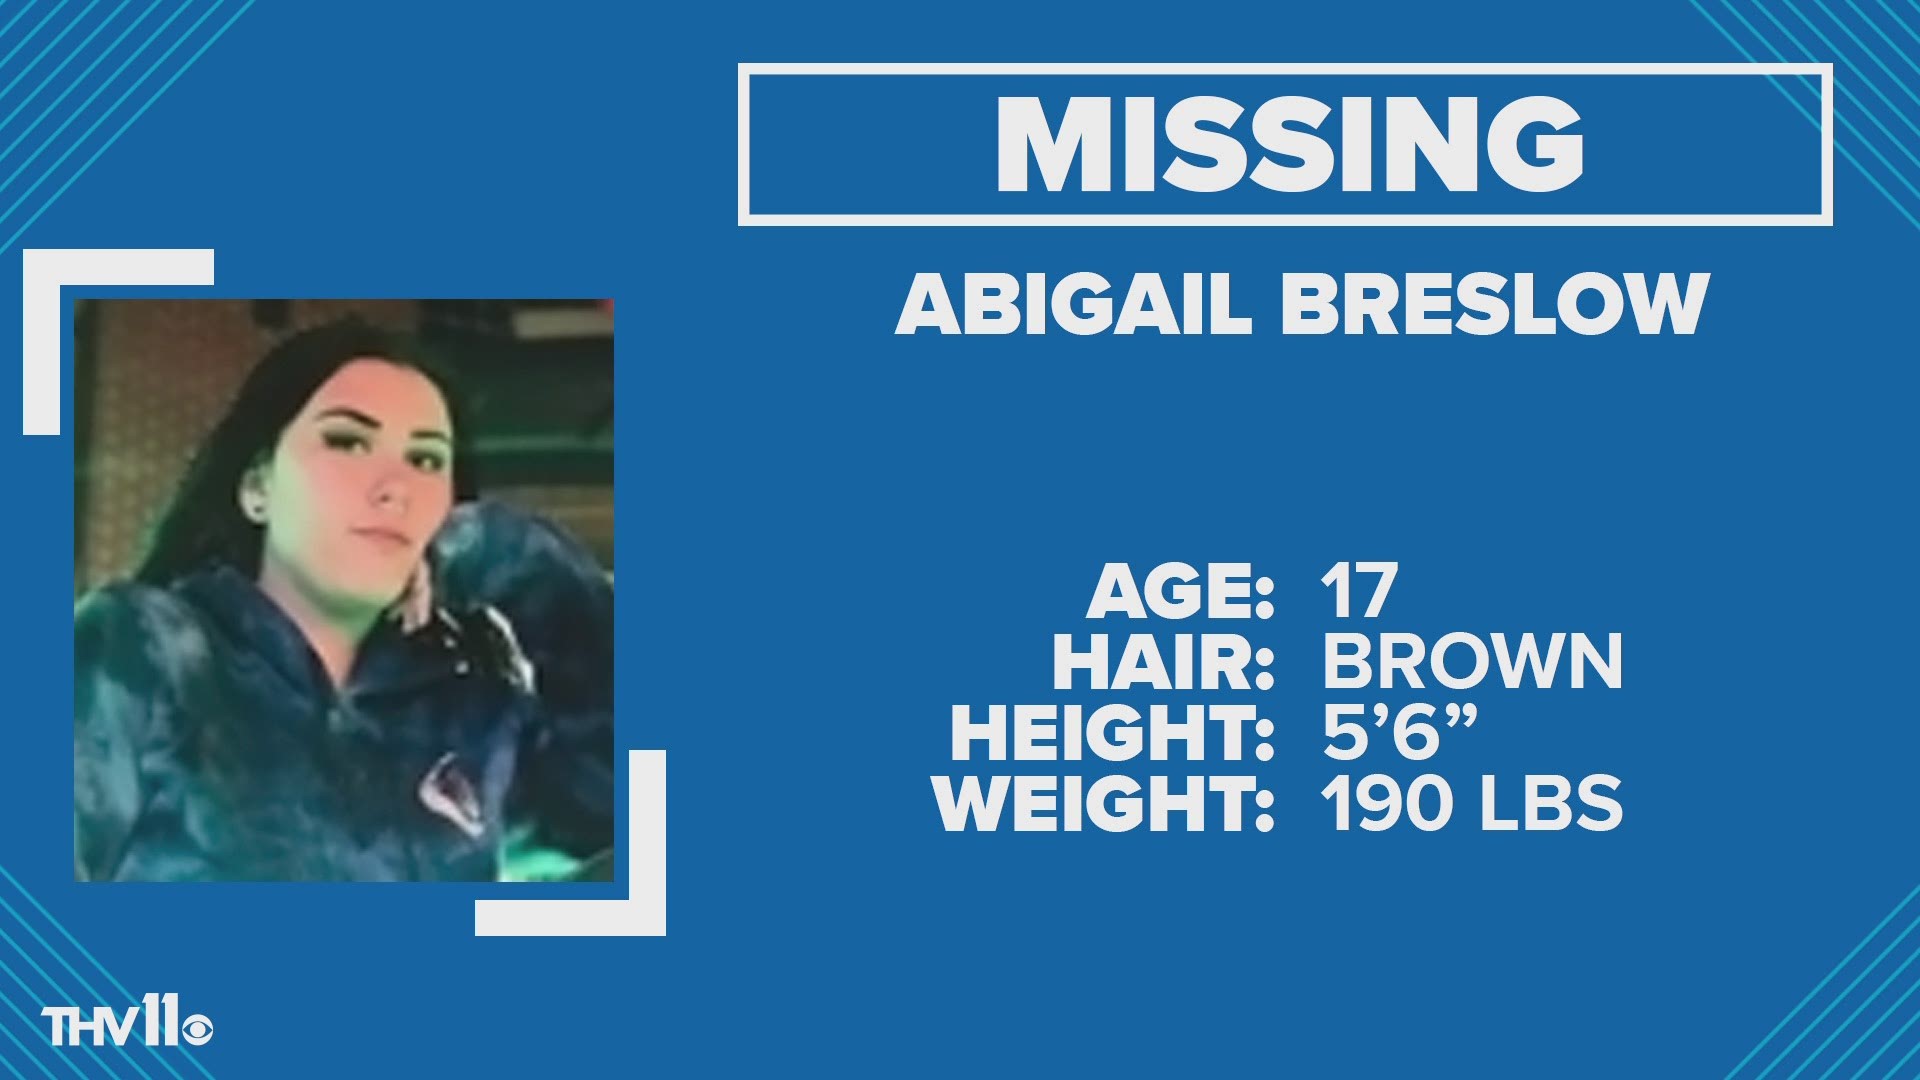 Abigail Breslow was last seen on January 14.